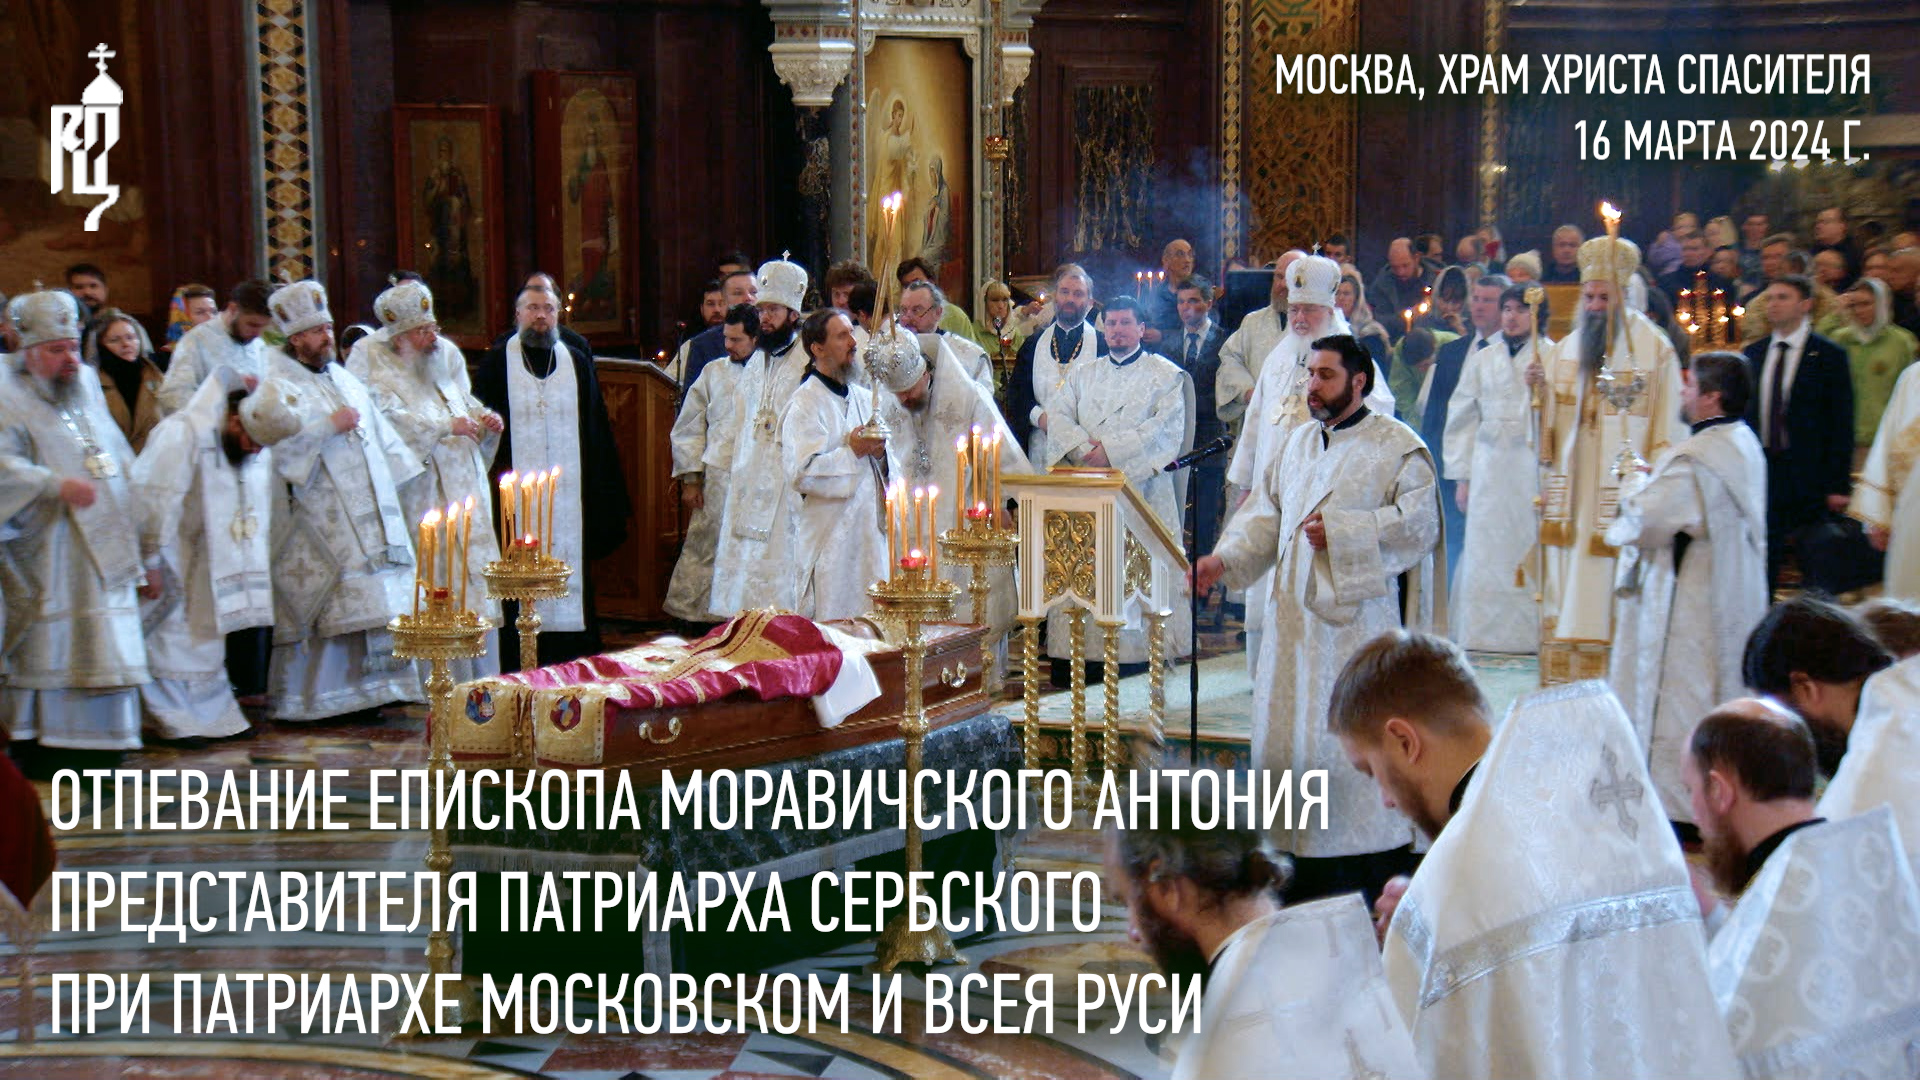 Отпевание епископа Антония, представителя Патриарха Сербского при Патриархе Московском и всея Руси